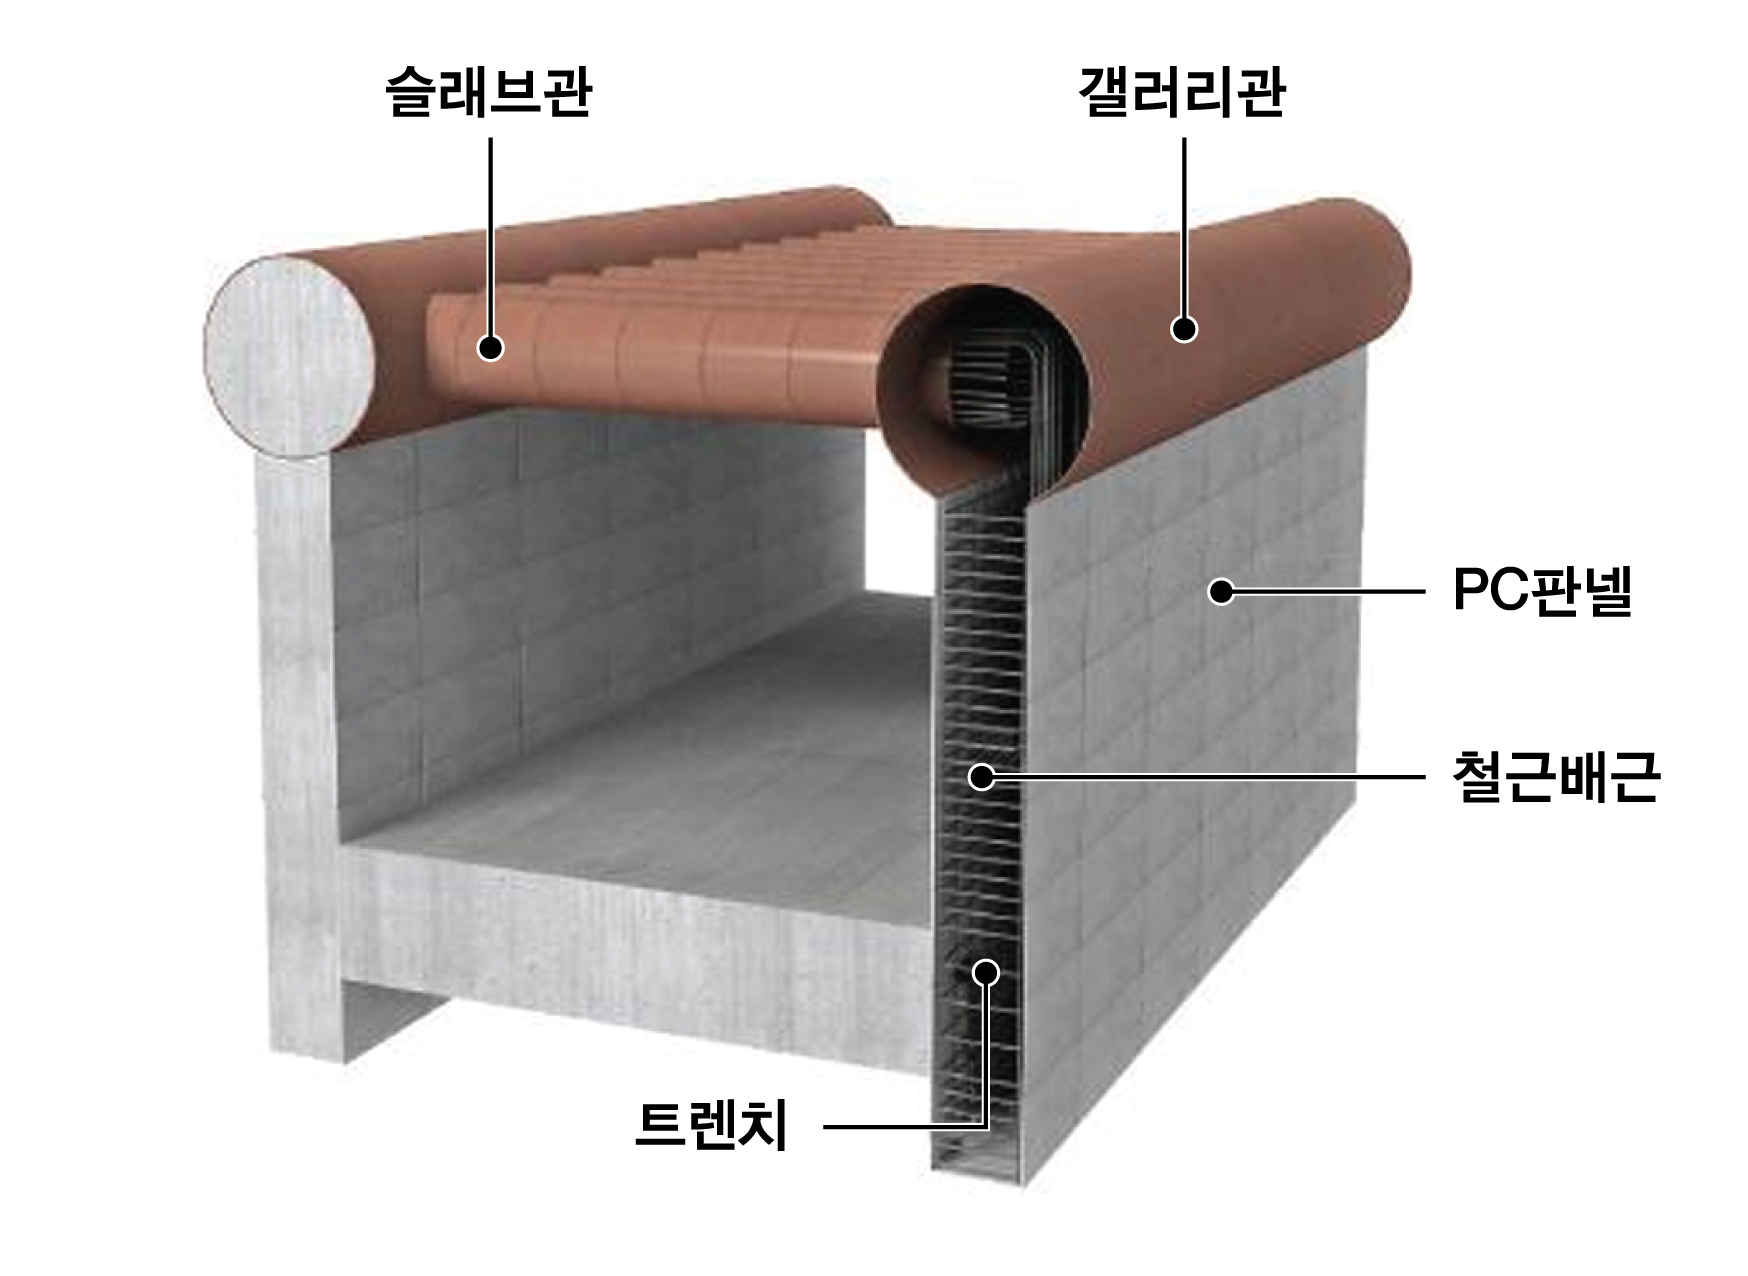 슬래브 강관과 PC 벽체트랜치를 이용한 터널축조공법(T.R.c.M 공법)